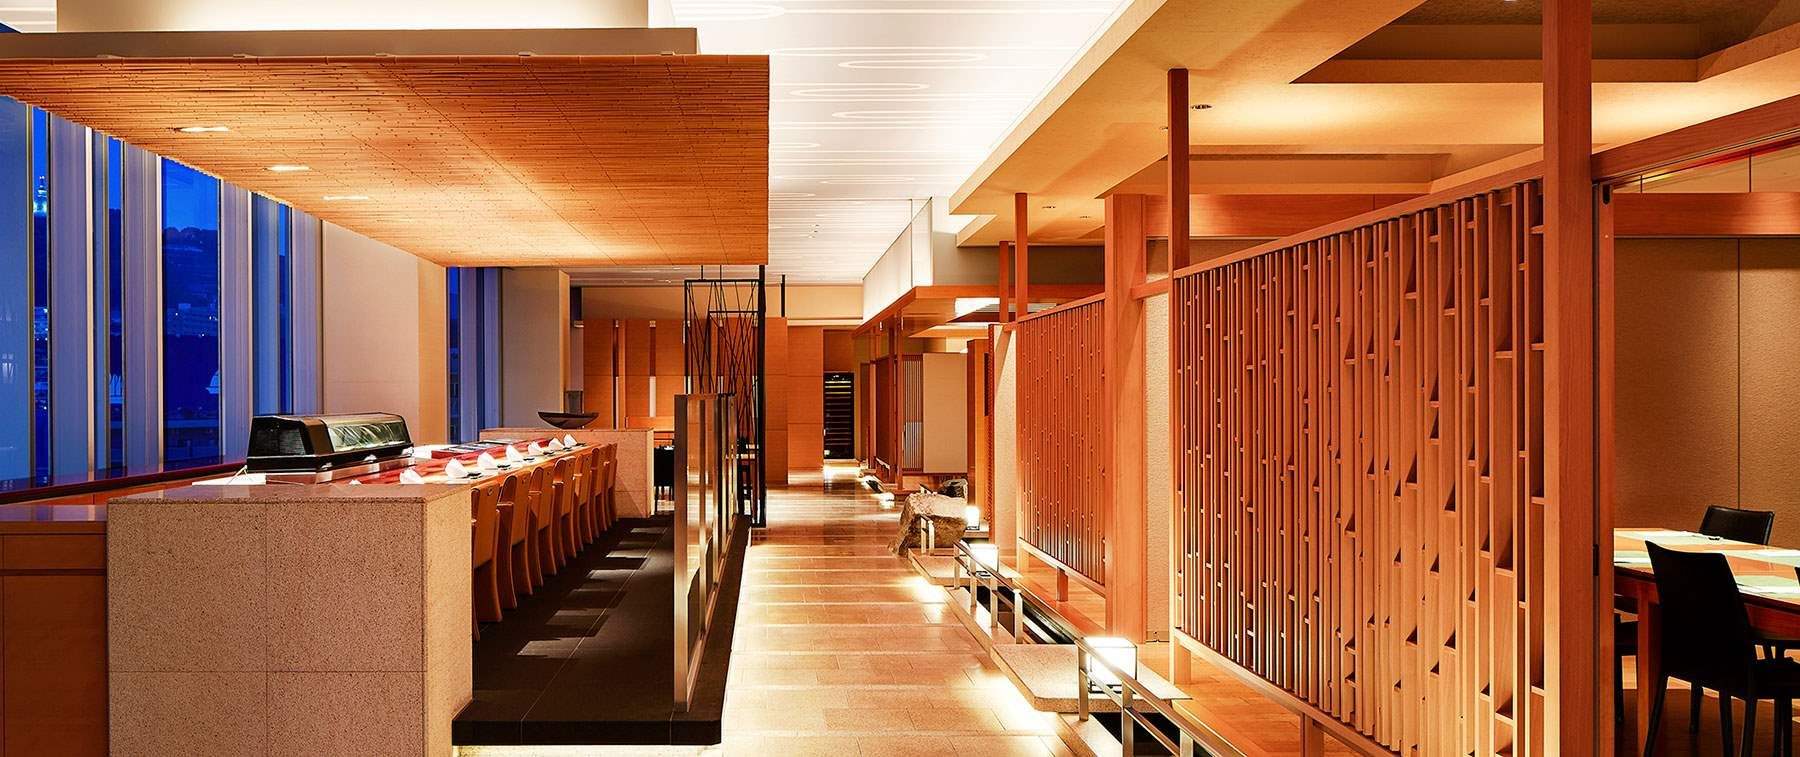 世界遺産宮島の厳島神社の回廊をデザインした店内